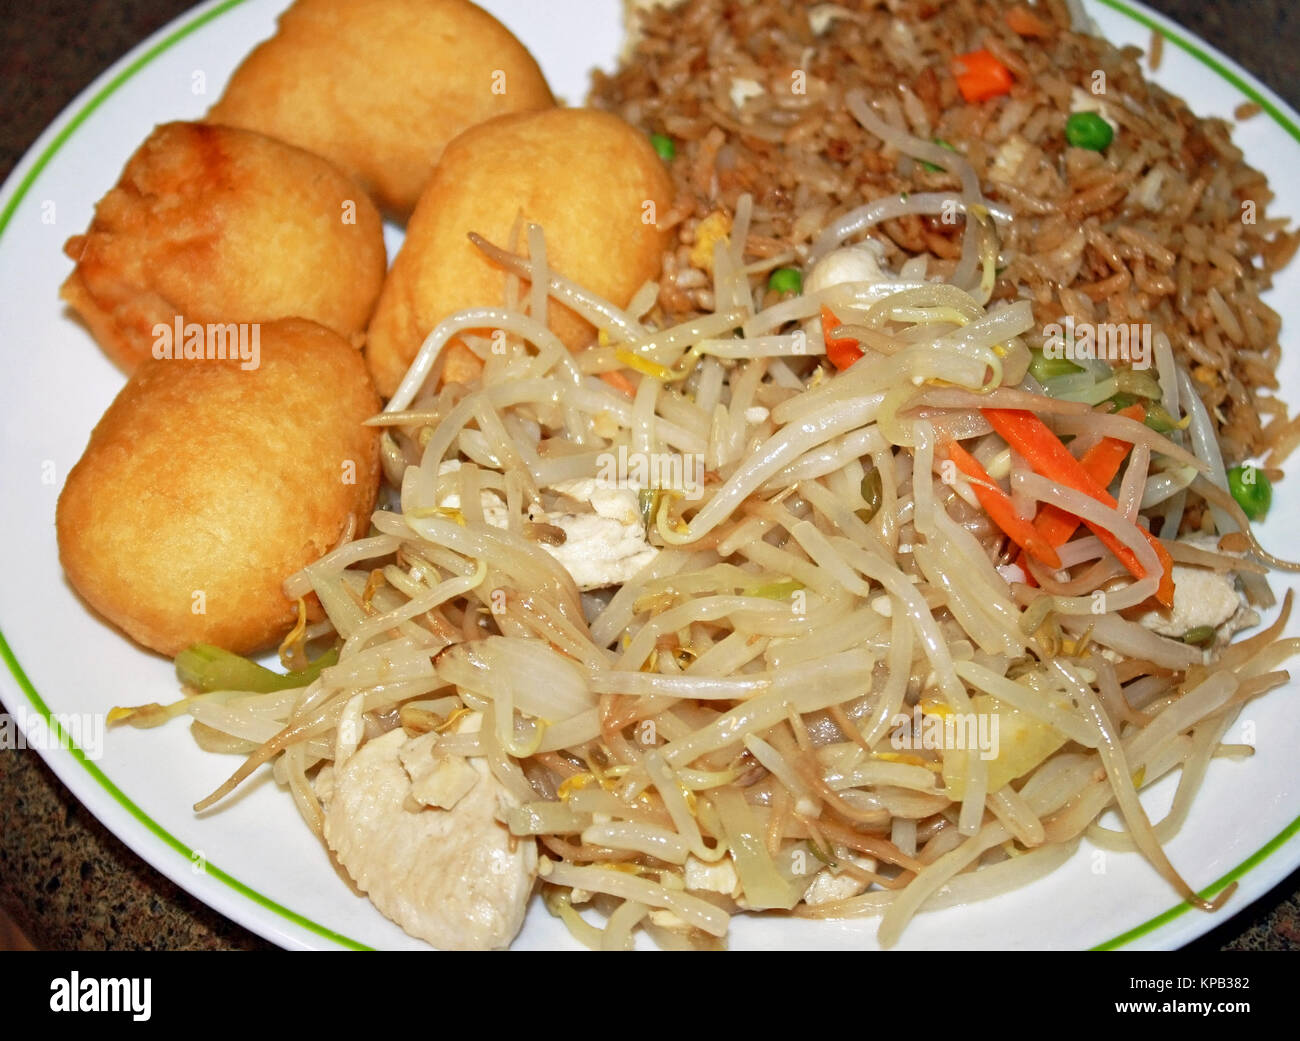 Prendre de la nourriture chinoise sur une assiette. Boules de poulet frit, poulet chop suey et riz frit au poulet avec légumes Banque D'Images